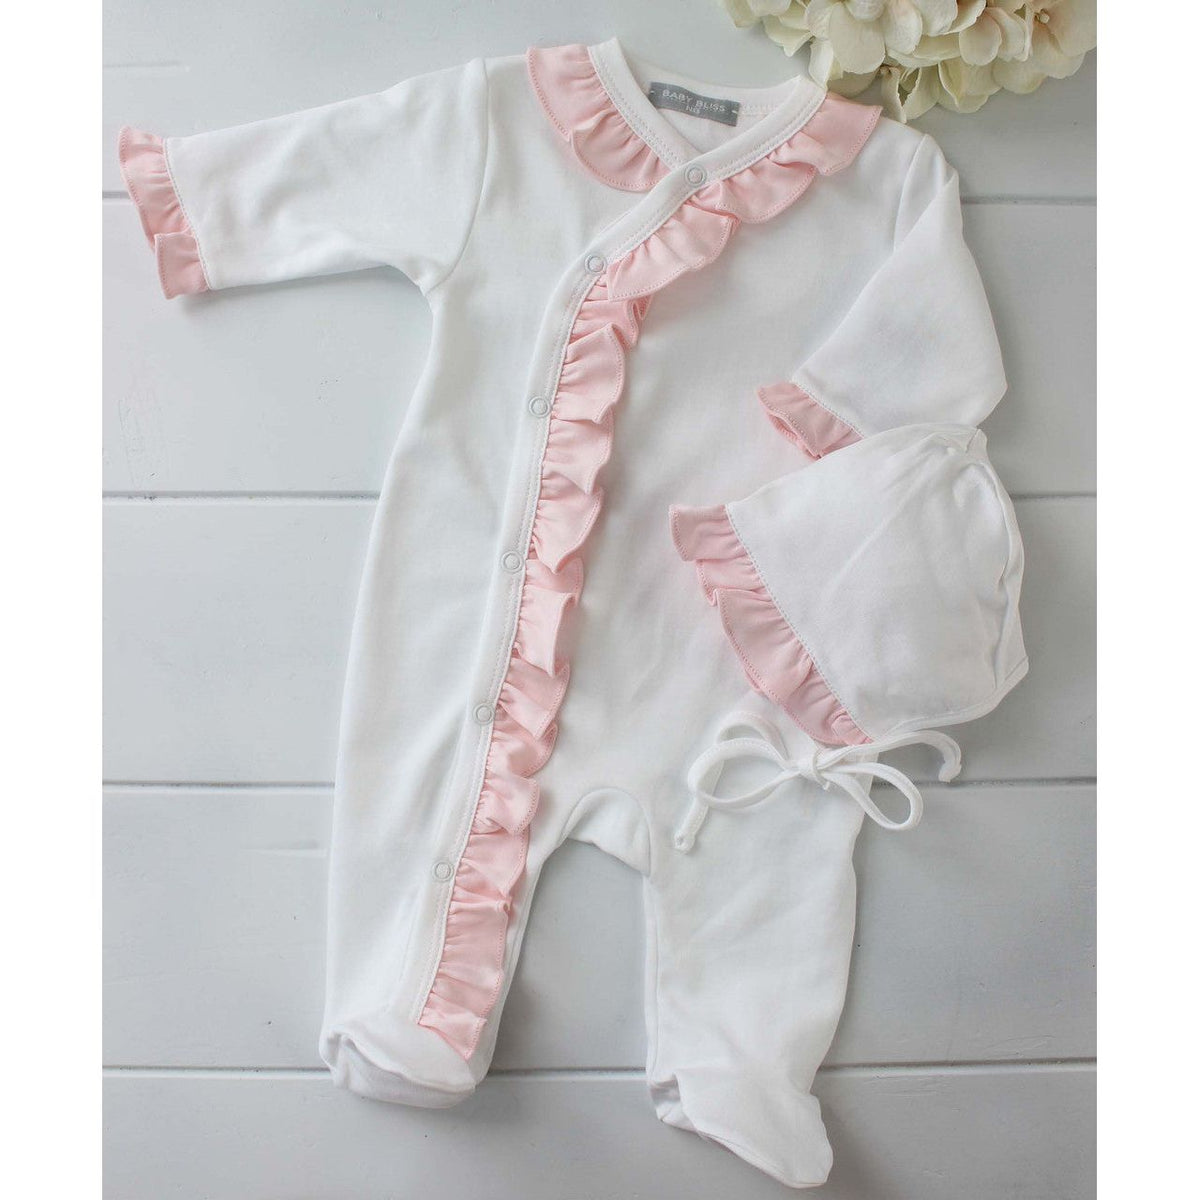 Baby Girls Kimono Footed Onesie Sleeper White Pink Ruffle